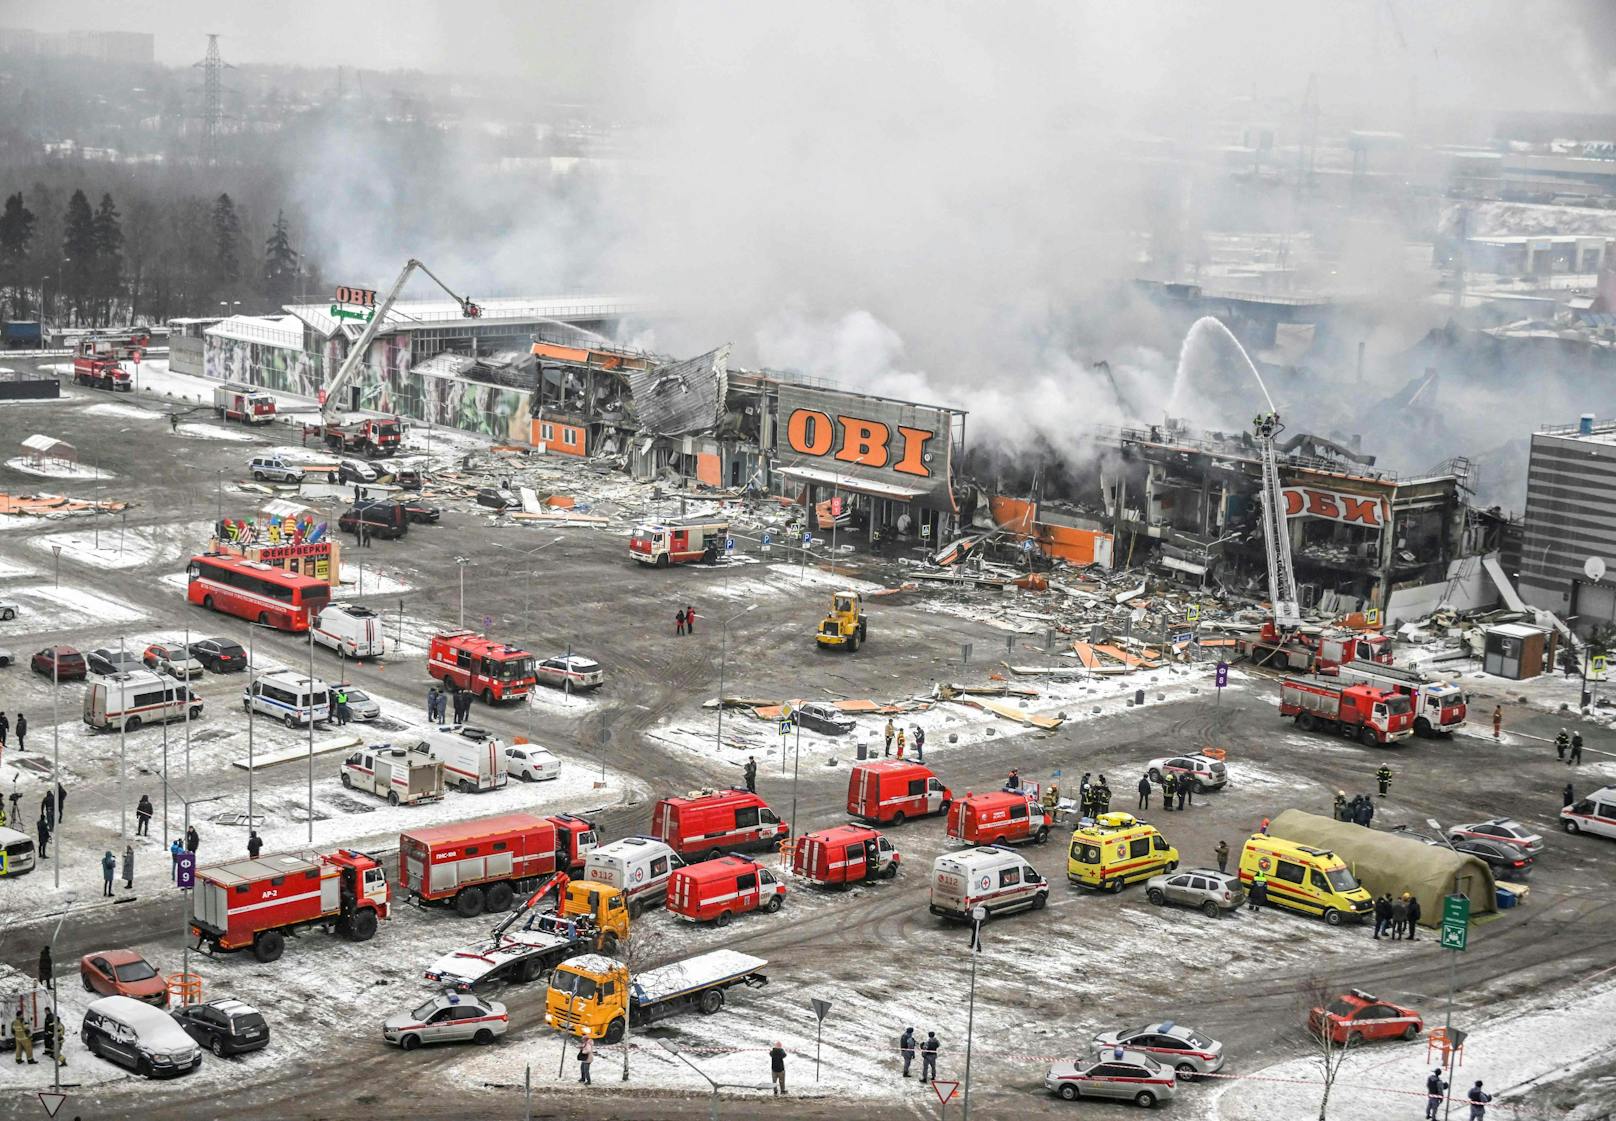 <a href="https://www.heute.at/s/explosion-feuer-wuetet-in-einkaufszentrum-vor-moskau-100243109">Mehr als 70 Feuerwehrleute und 20 Löschfahrzeuge waren im Einsatz</a>.